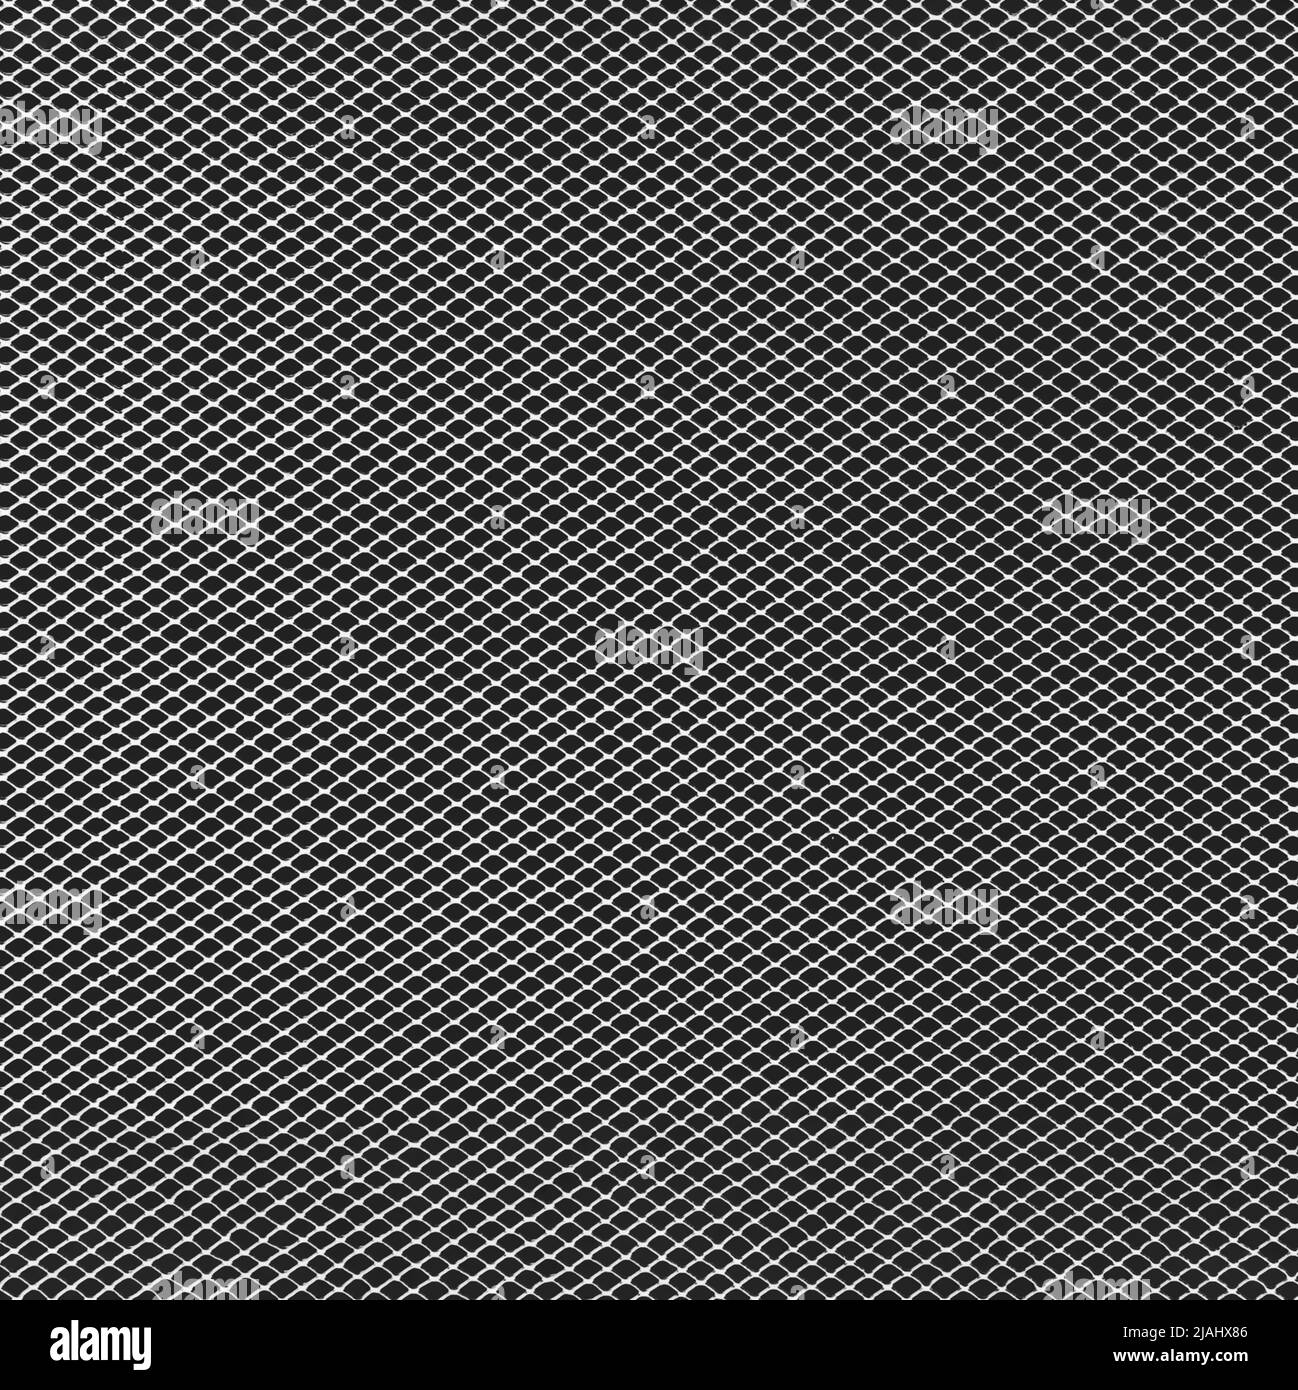 arrière-plan en grille métallique monochrome avec motif de points noirs. Banque D'Images